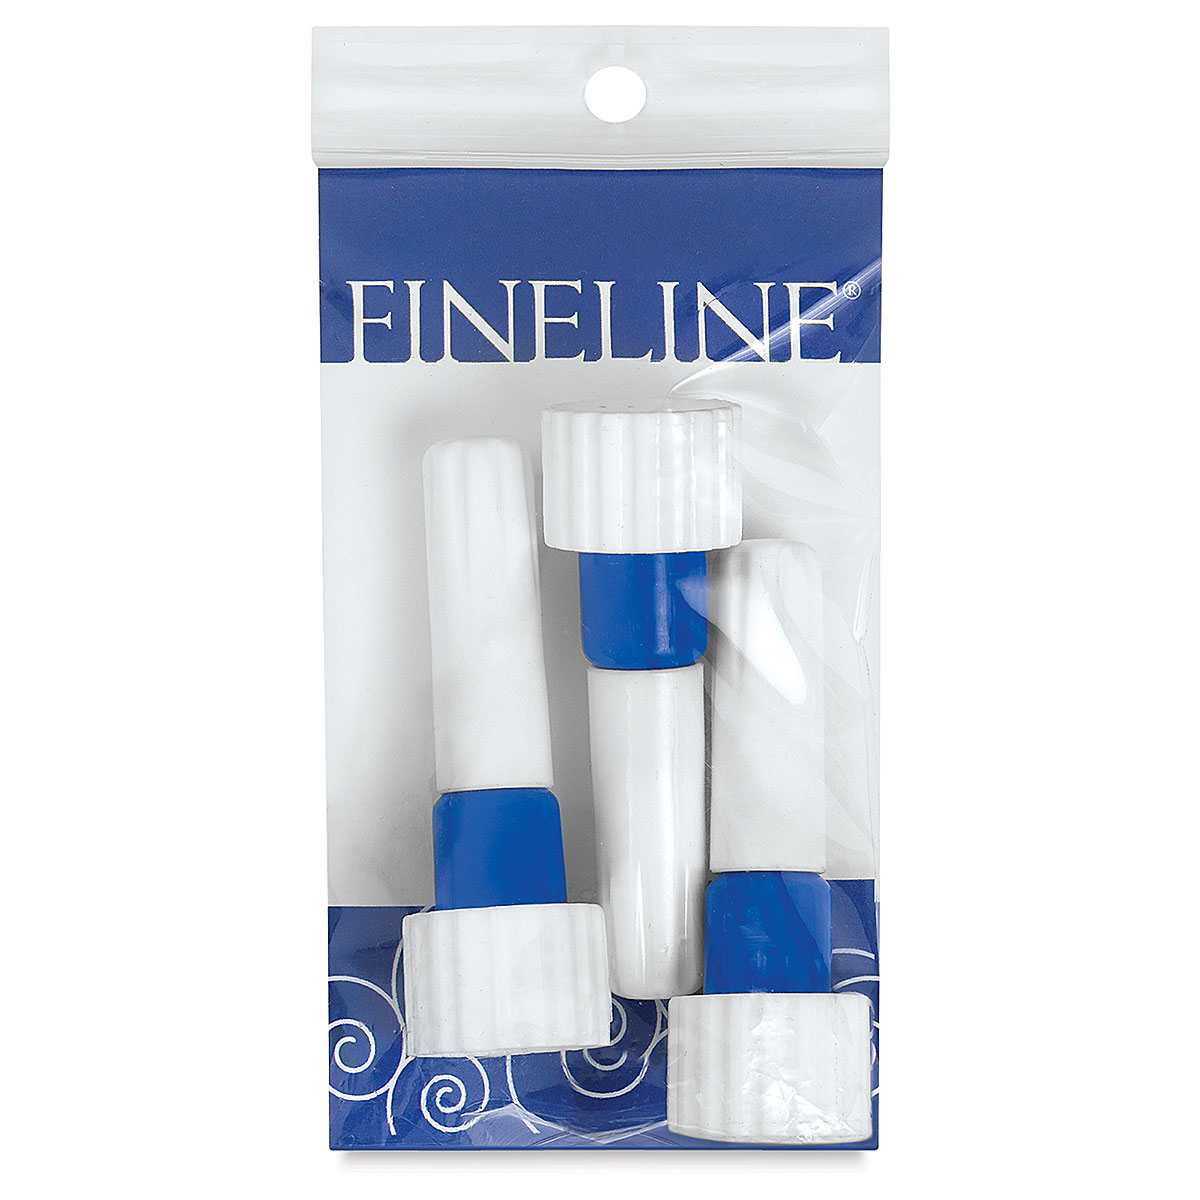 Fineline Applicator Bottles - Jensen Global